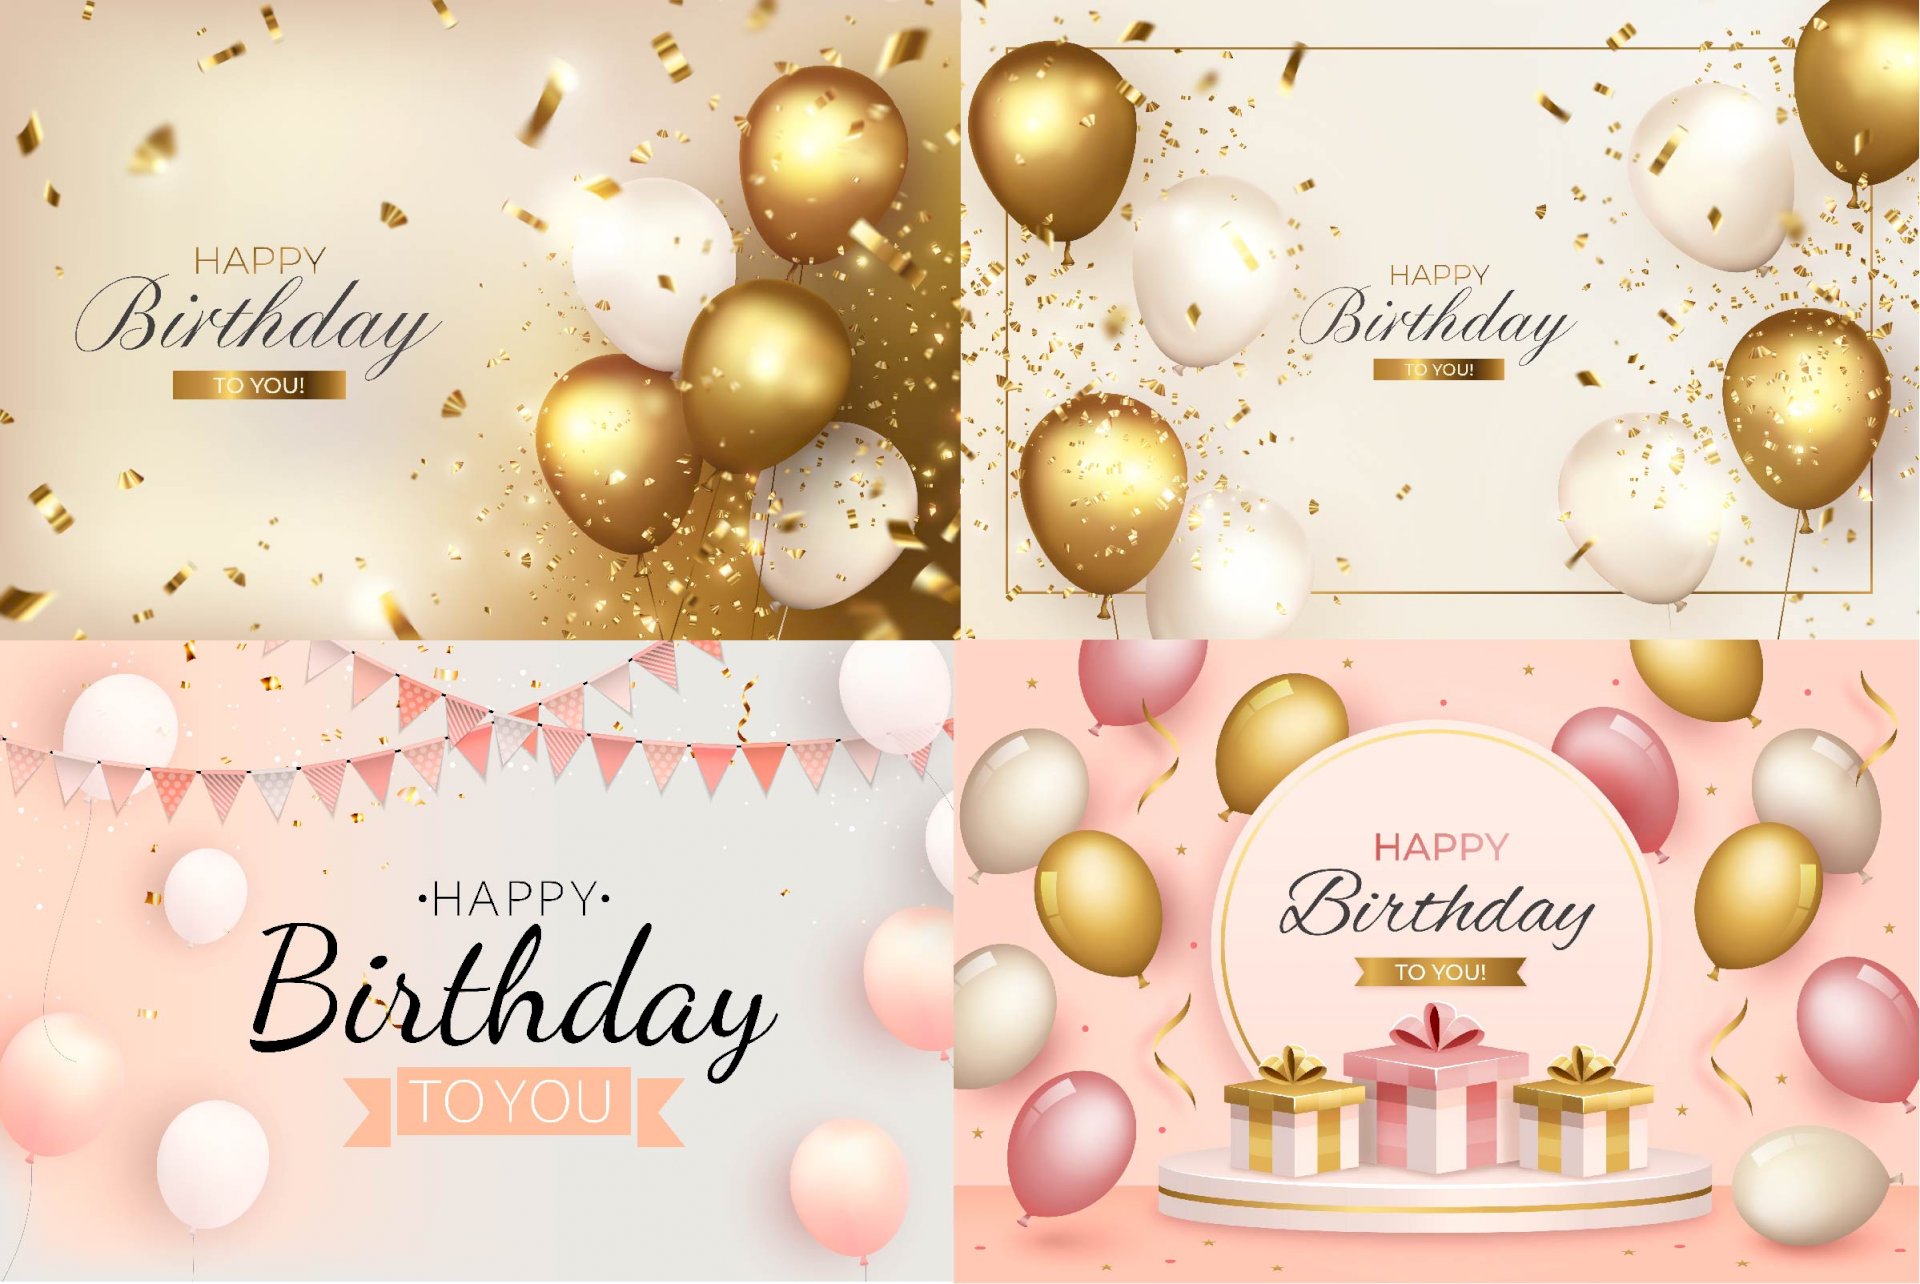 Download free mẫu phông sinh nhật vector cho bé đẹp file SVG, AI, JPG, PDF,  EPS, PNG, CDR